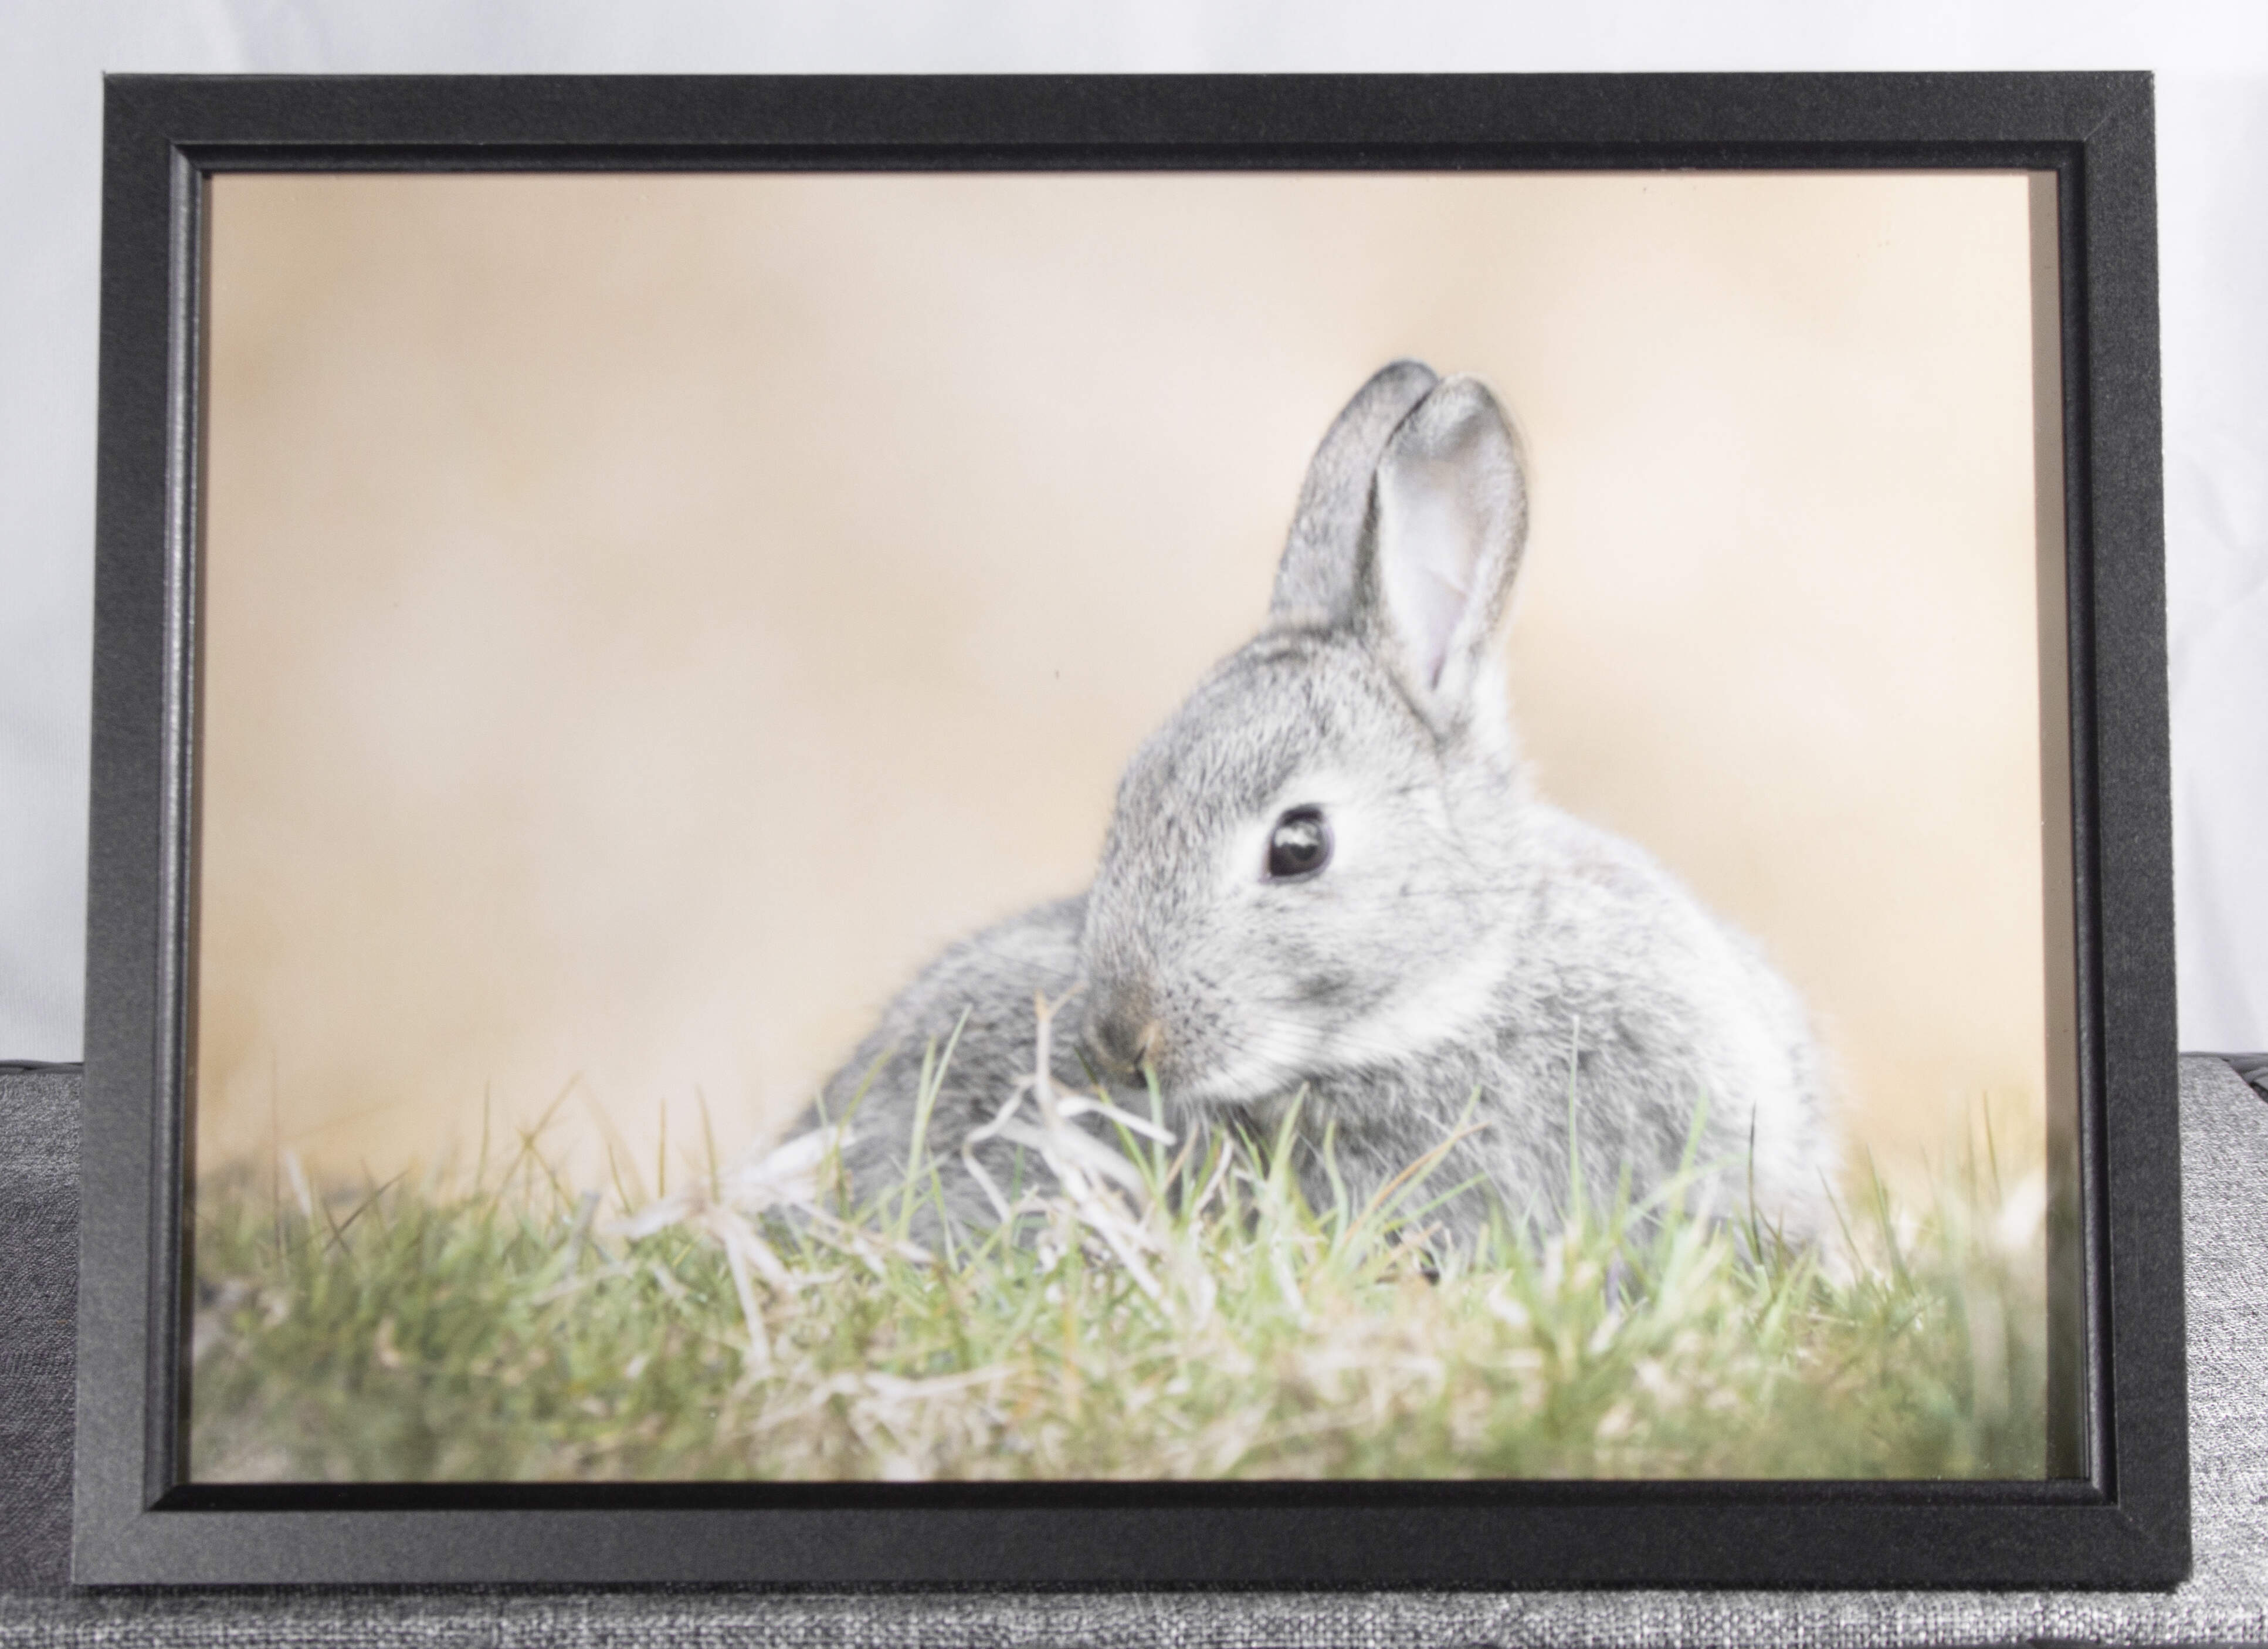 Rabbit framed photo